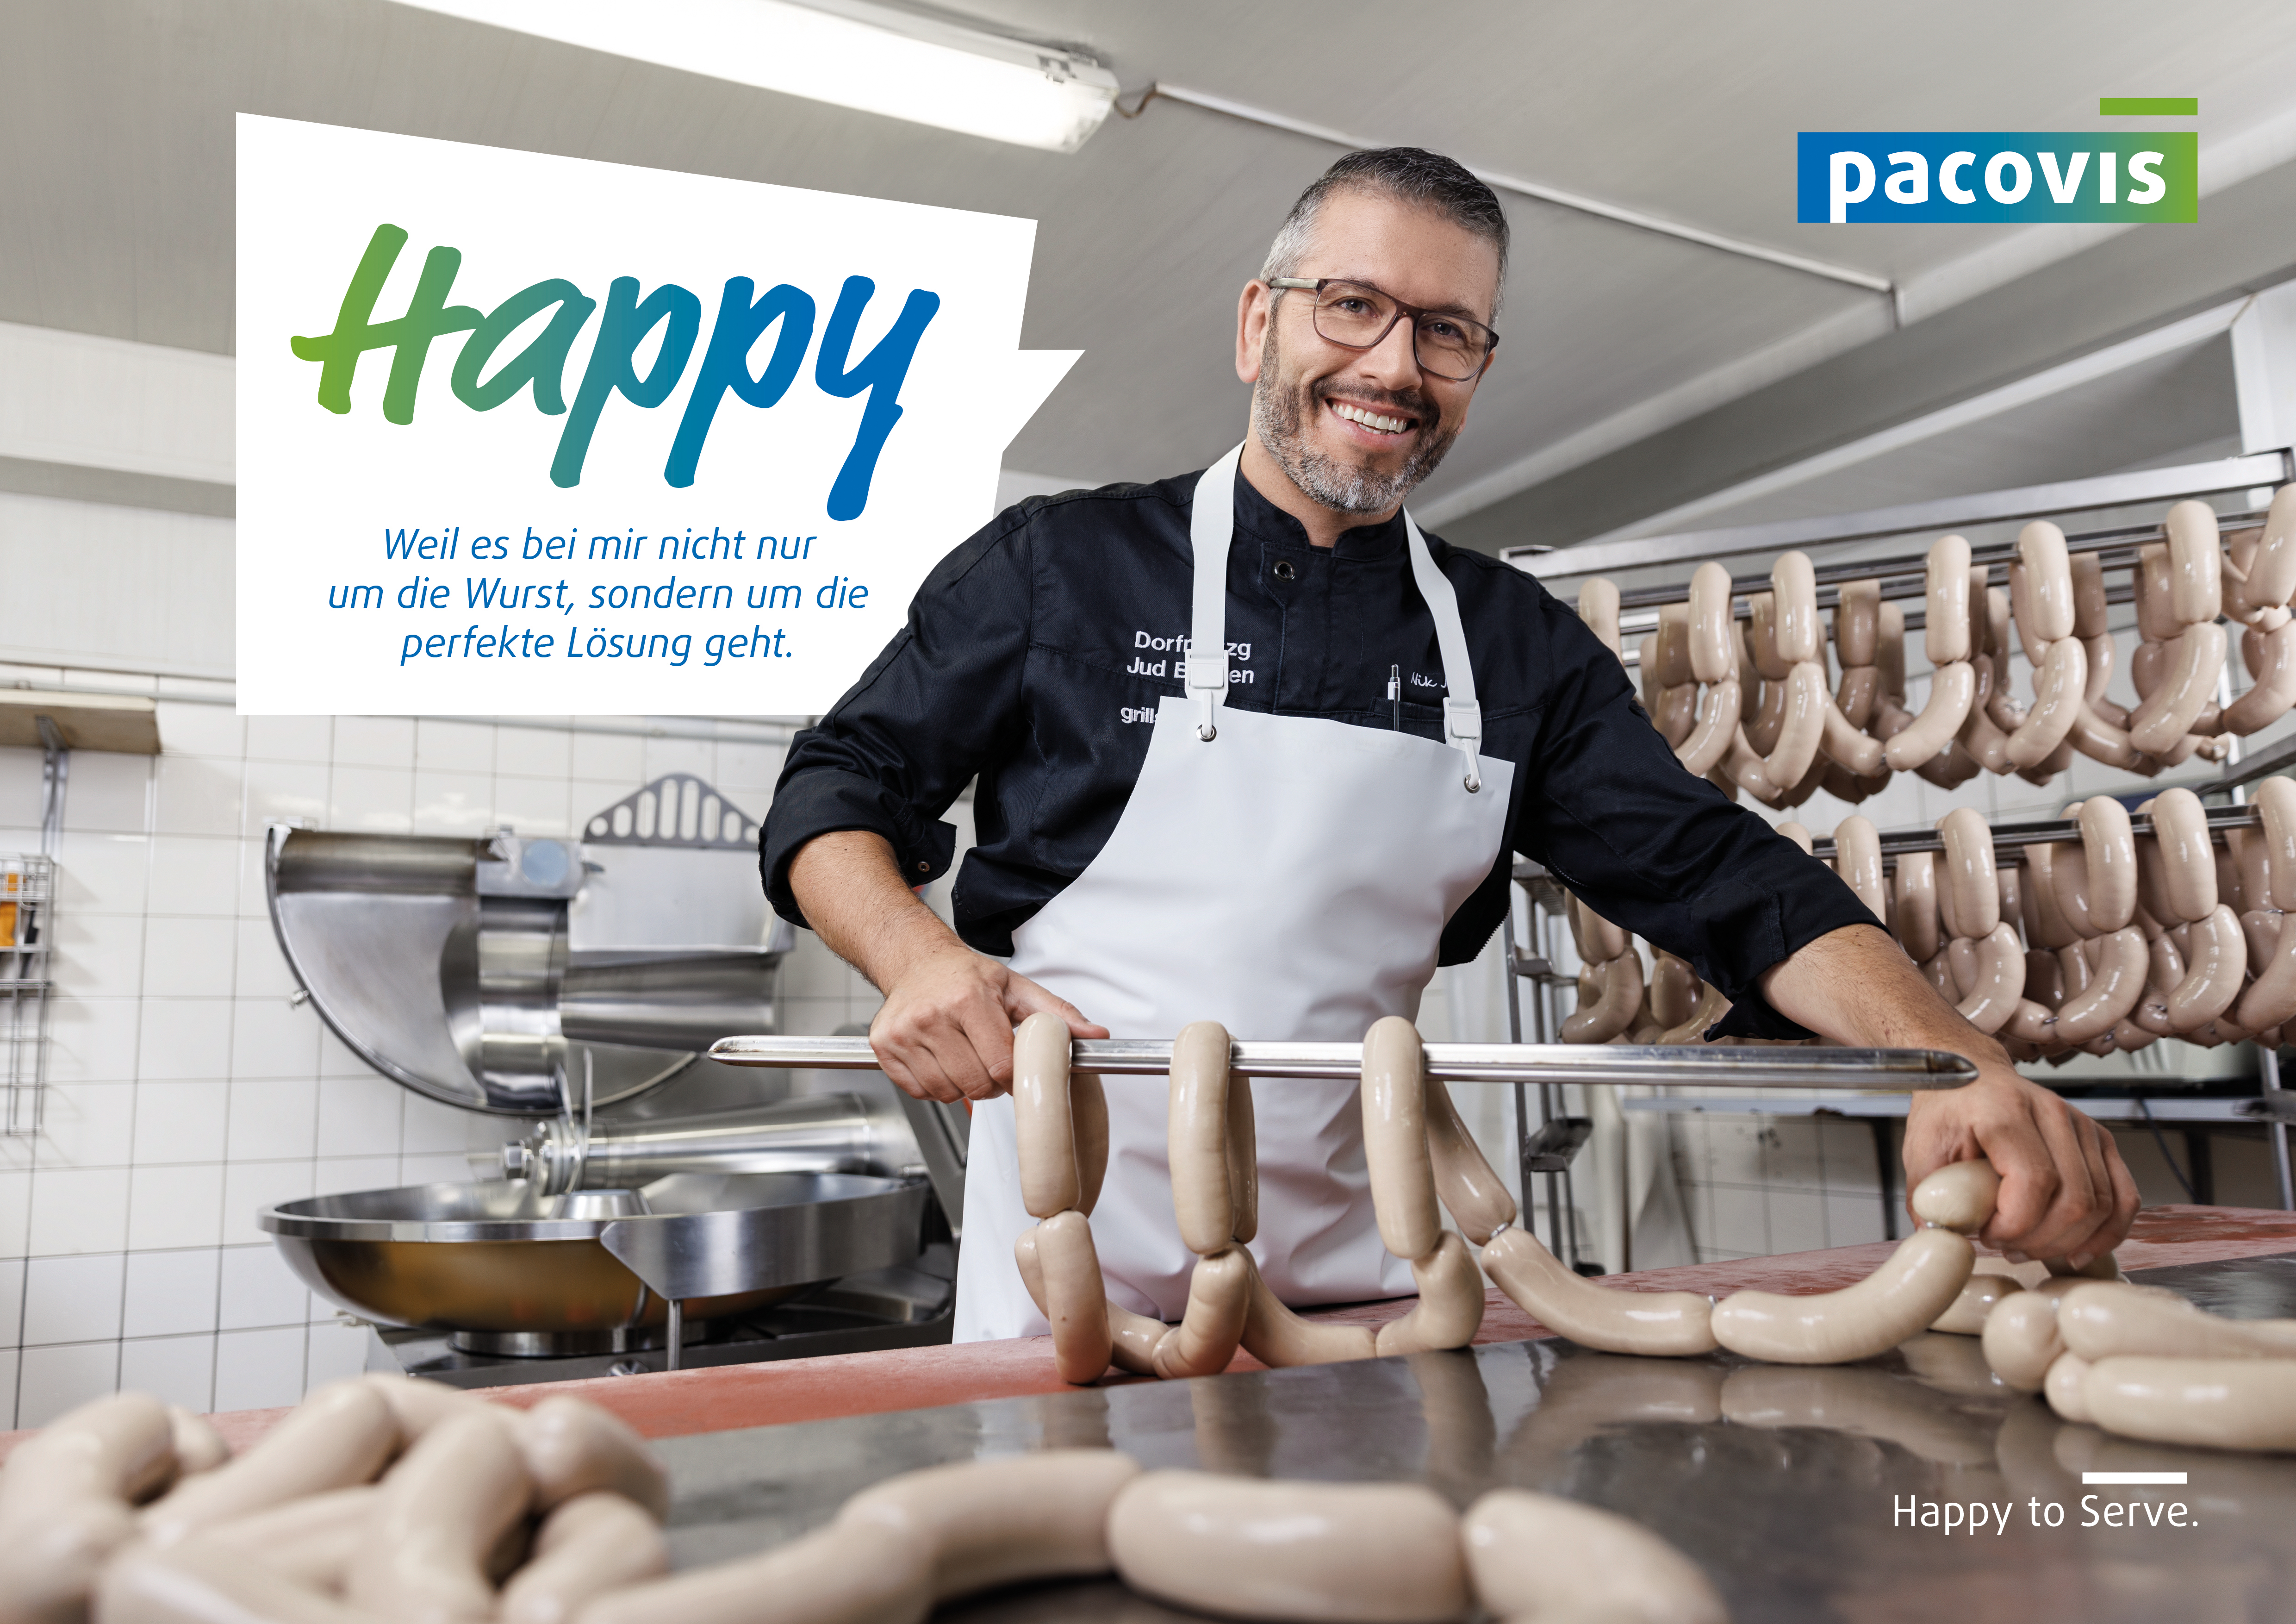 Bild aus der Pacovis-Imagekampagne mit glücklichem Metzger und Text "Happy, weil es bei mir nicht nur um die Wurst, sondern um die perfekte Lösung geht."